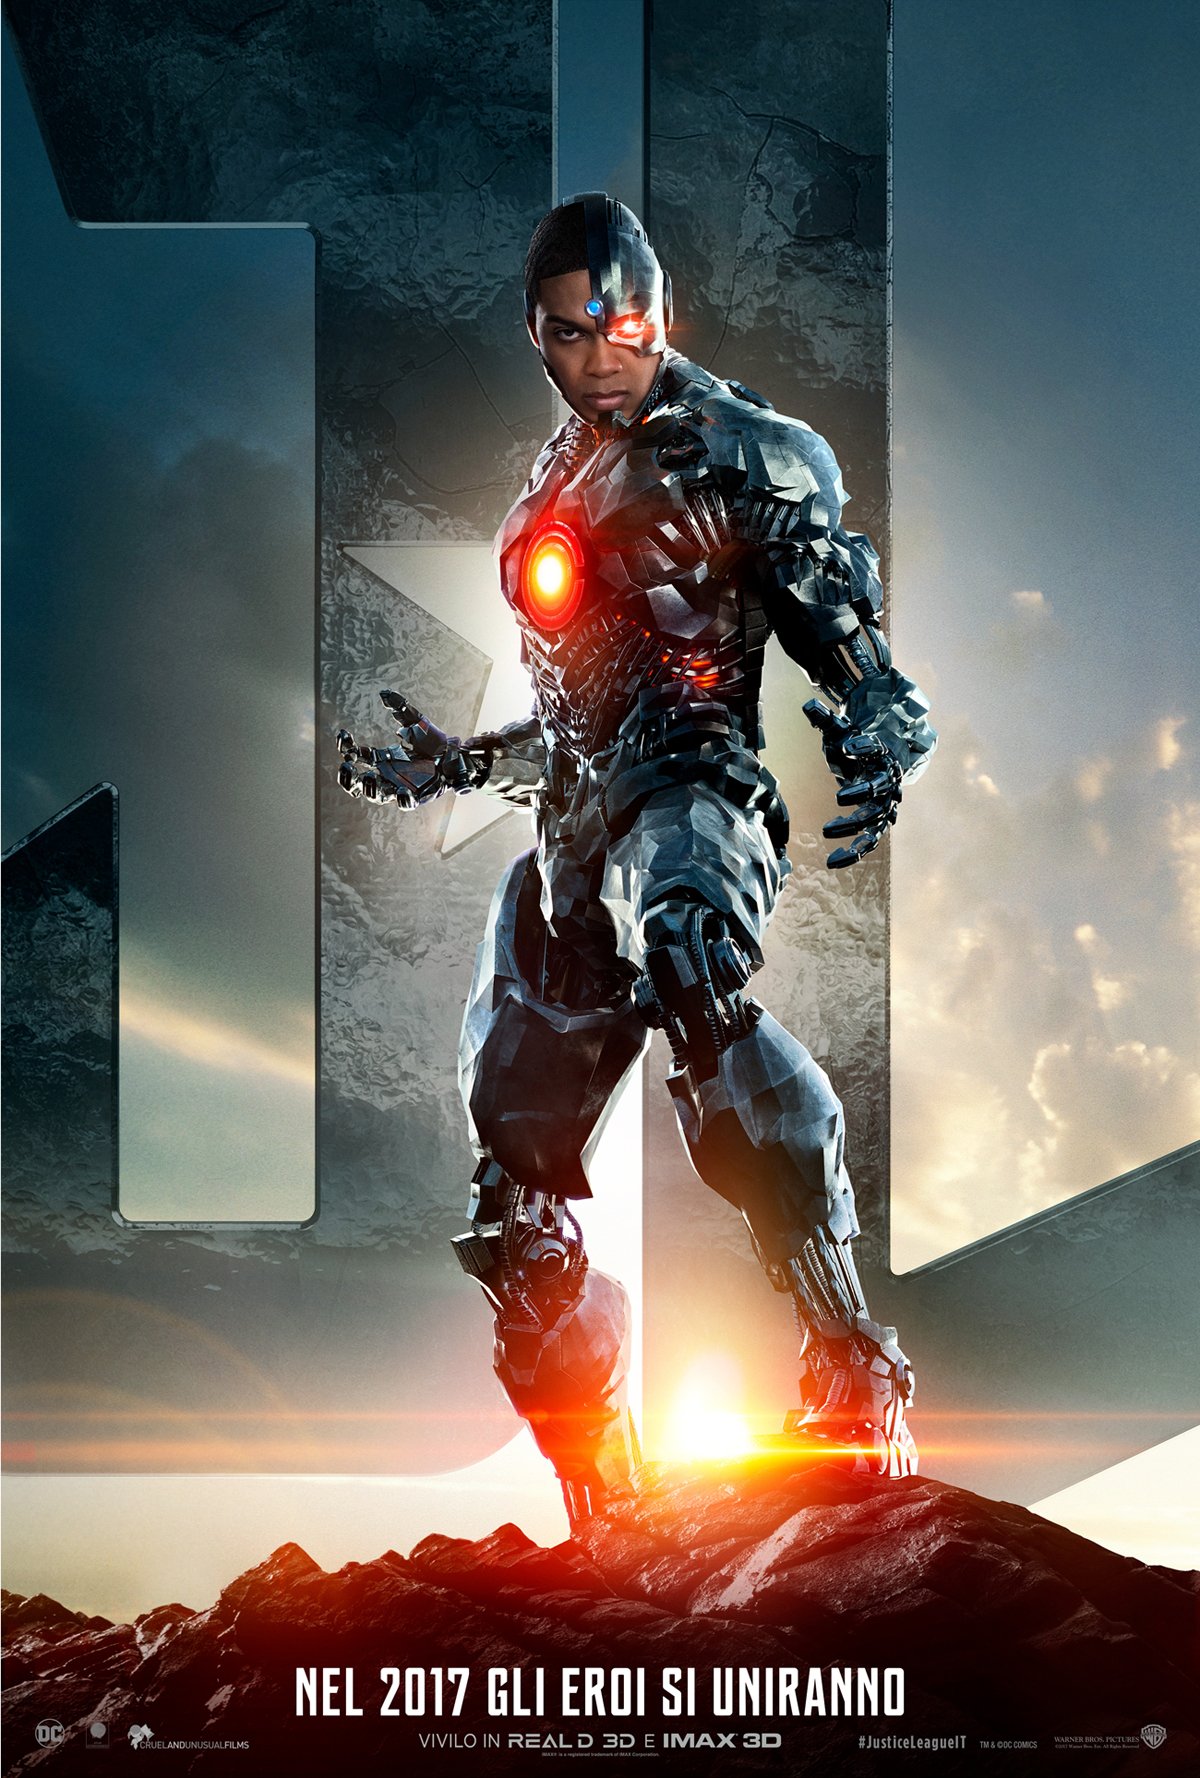 Il character poster italiano di Justice League dedicato a Cyborg